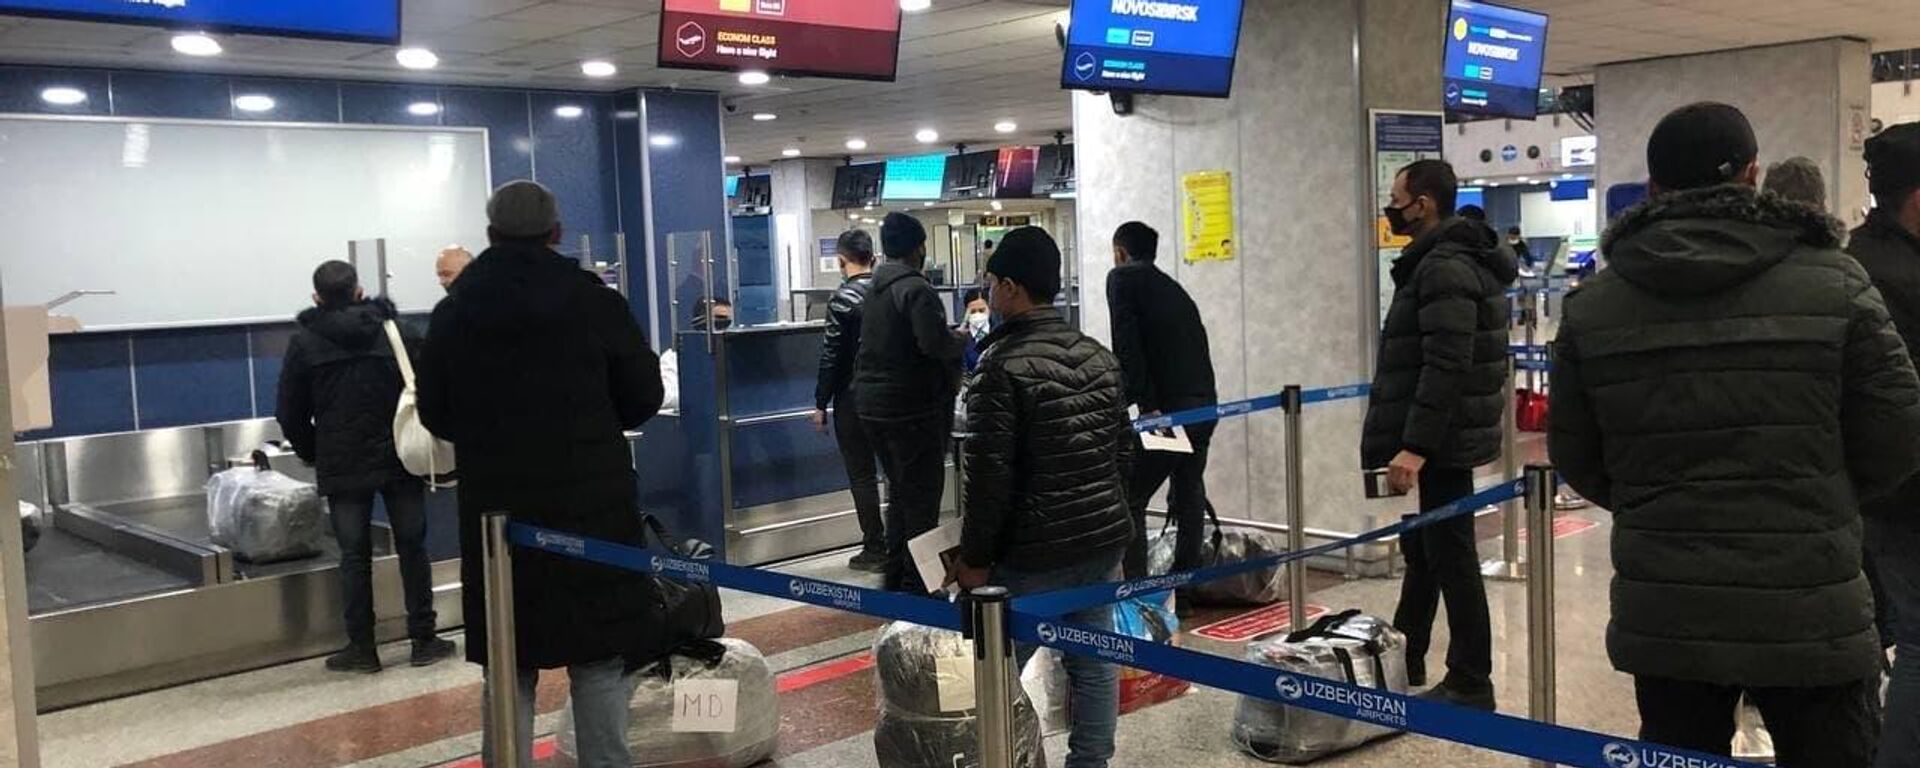 Аэропорт домодедово депортация мигрантов